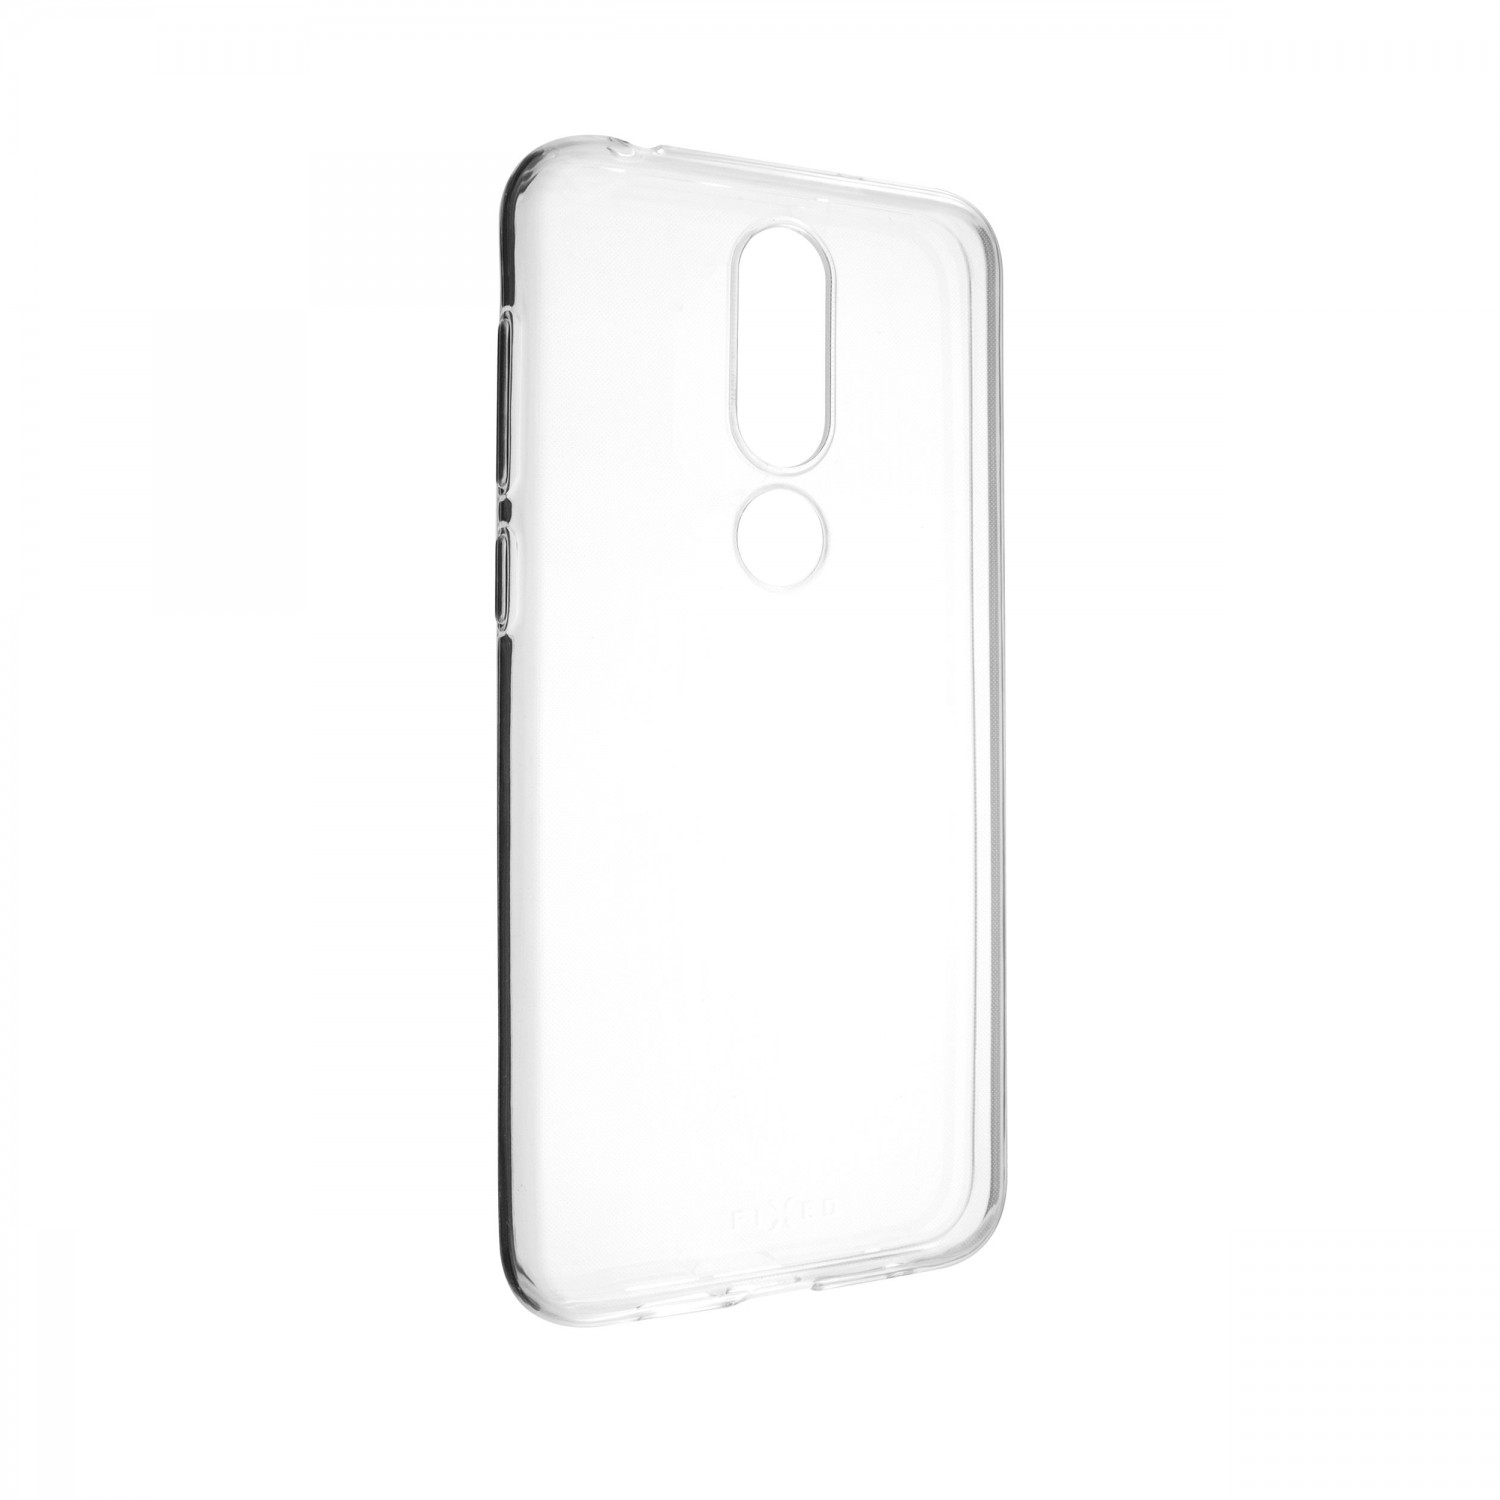 Ultratenké TPU gelové pouzdro FIXED Skin pro Nokia 6.1 Plus, transparentní